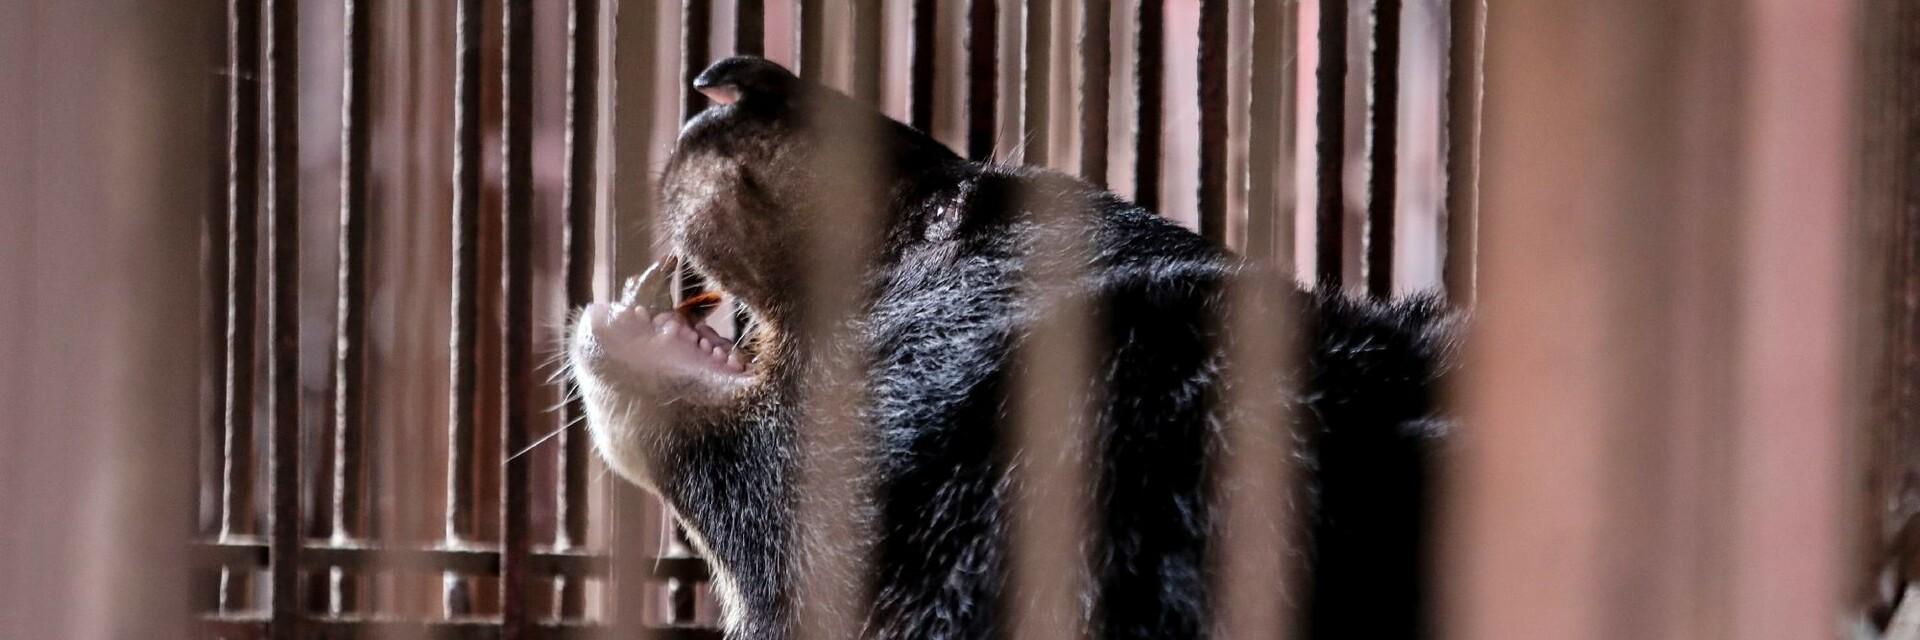 Ours à bile au Vietnam